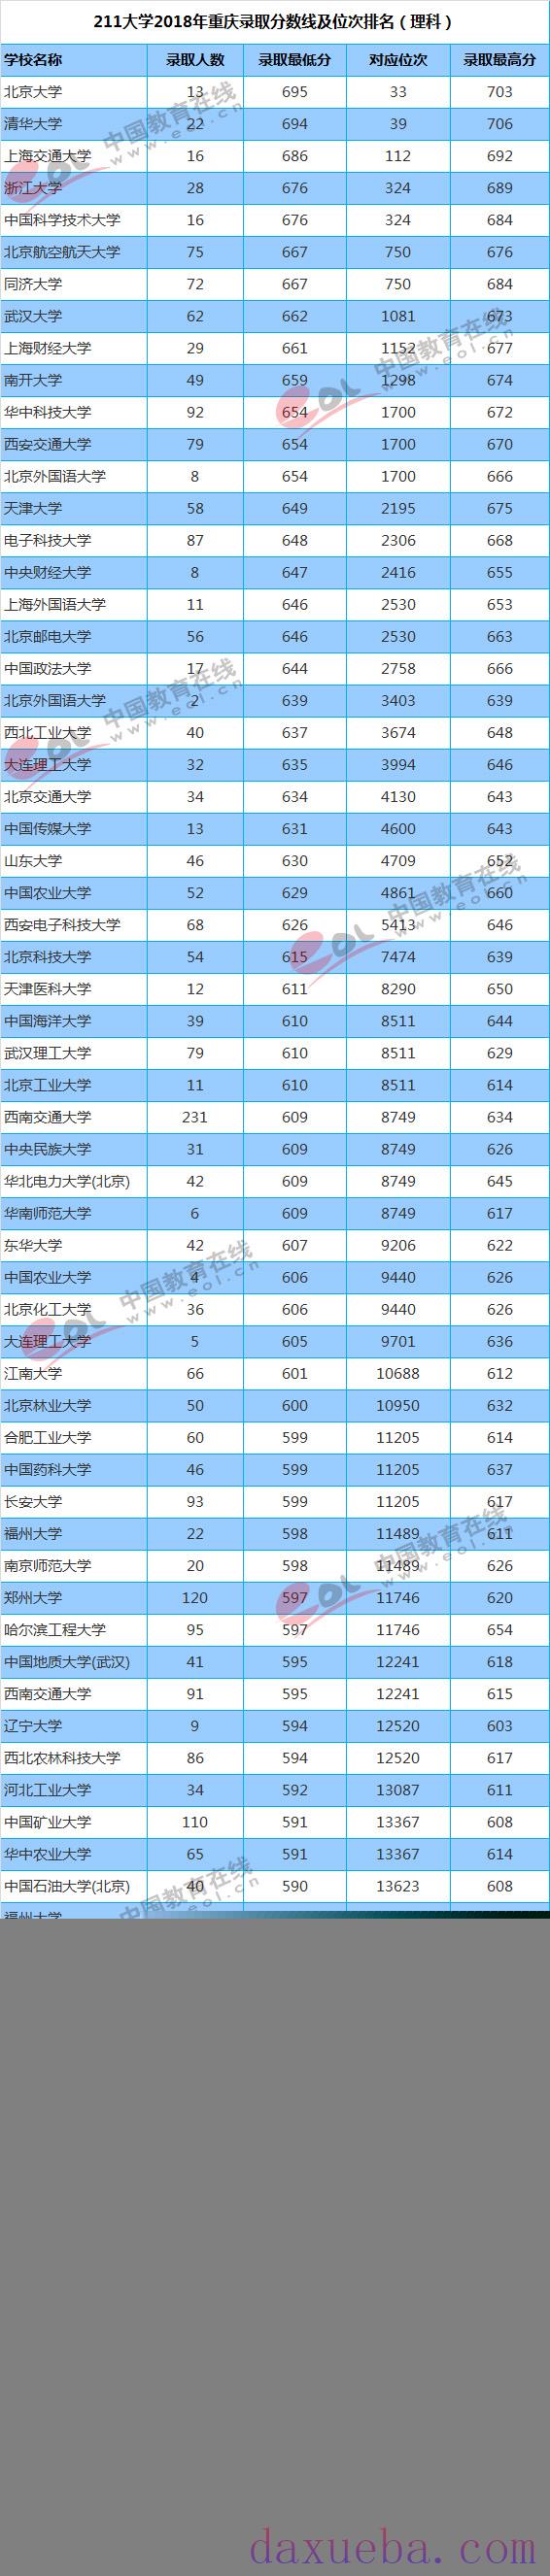 2018-2021年重庆高考211大学投档线及最低录取位次统计表  